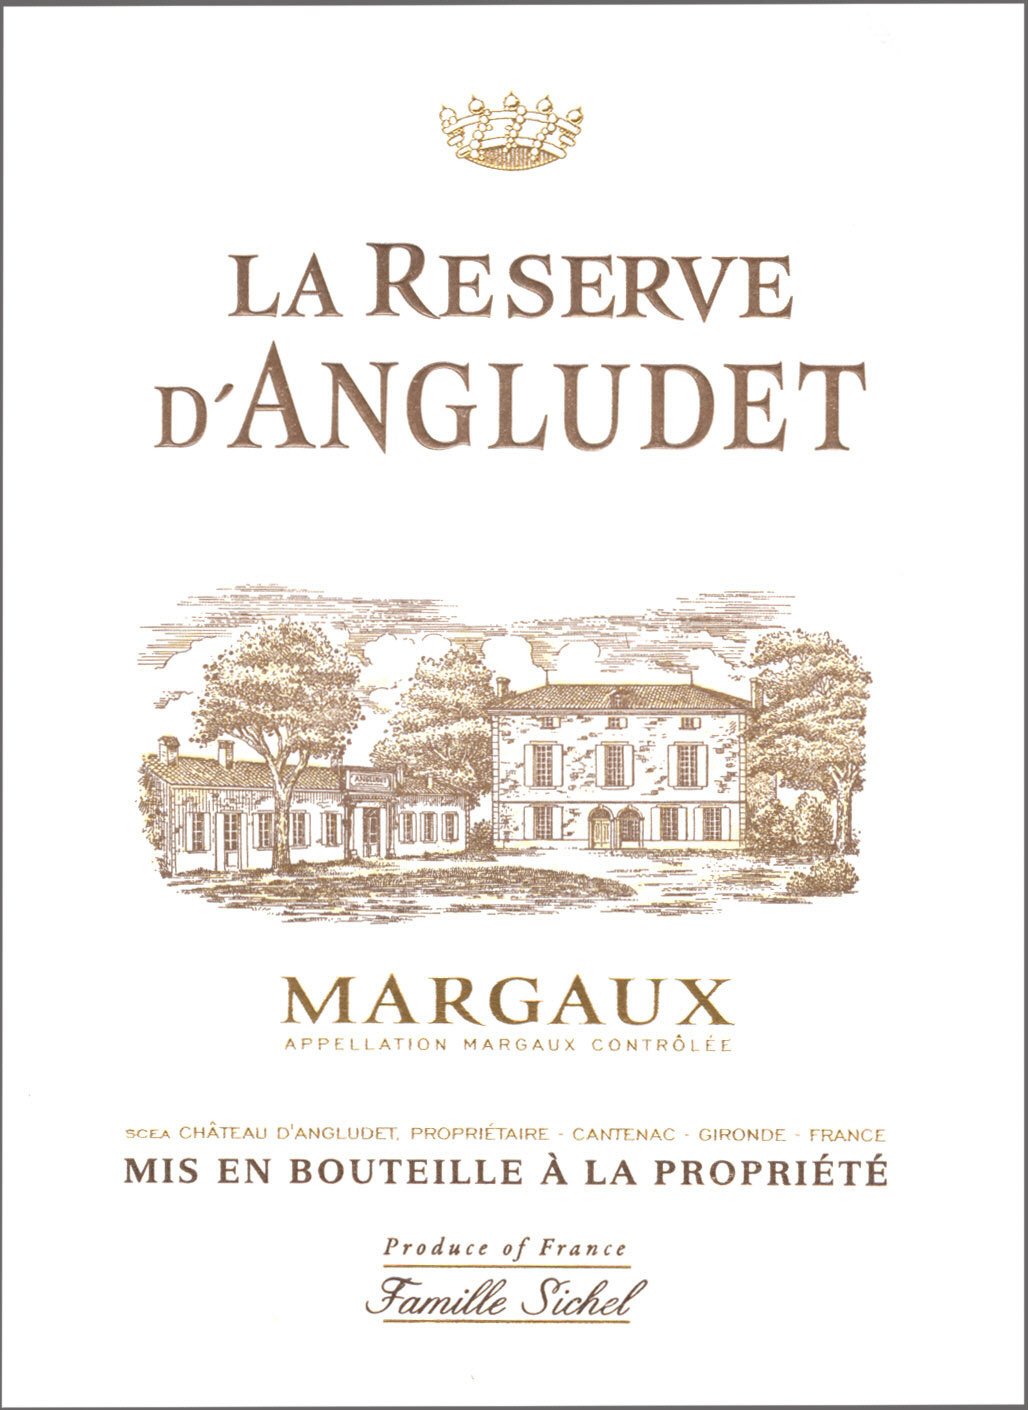 La Réserve d'Angludet AOC Margaux Rouge 2013